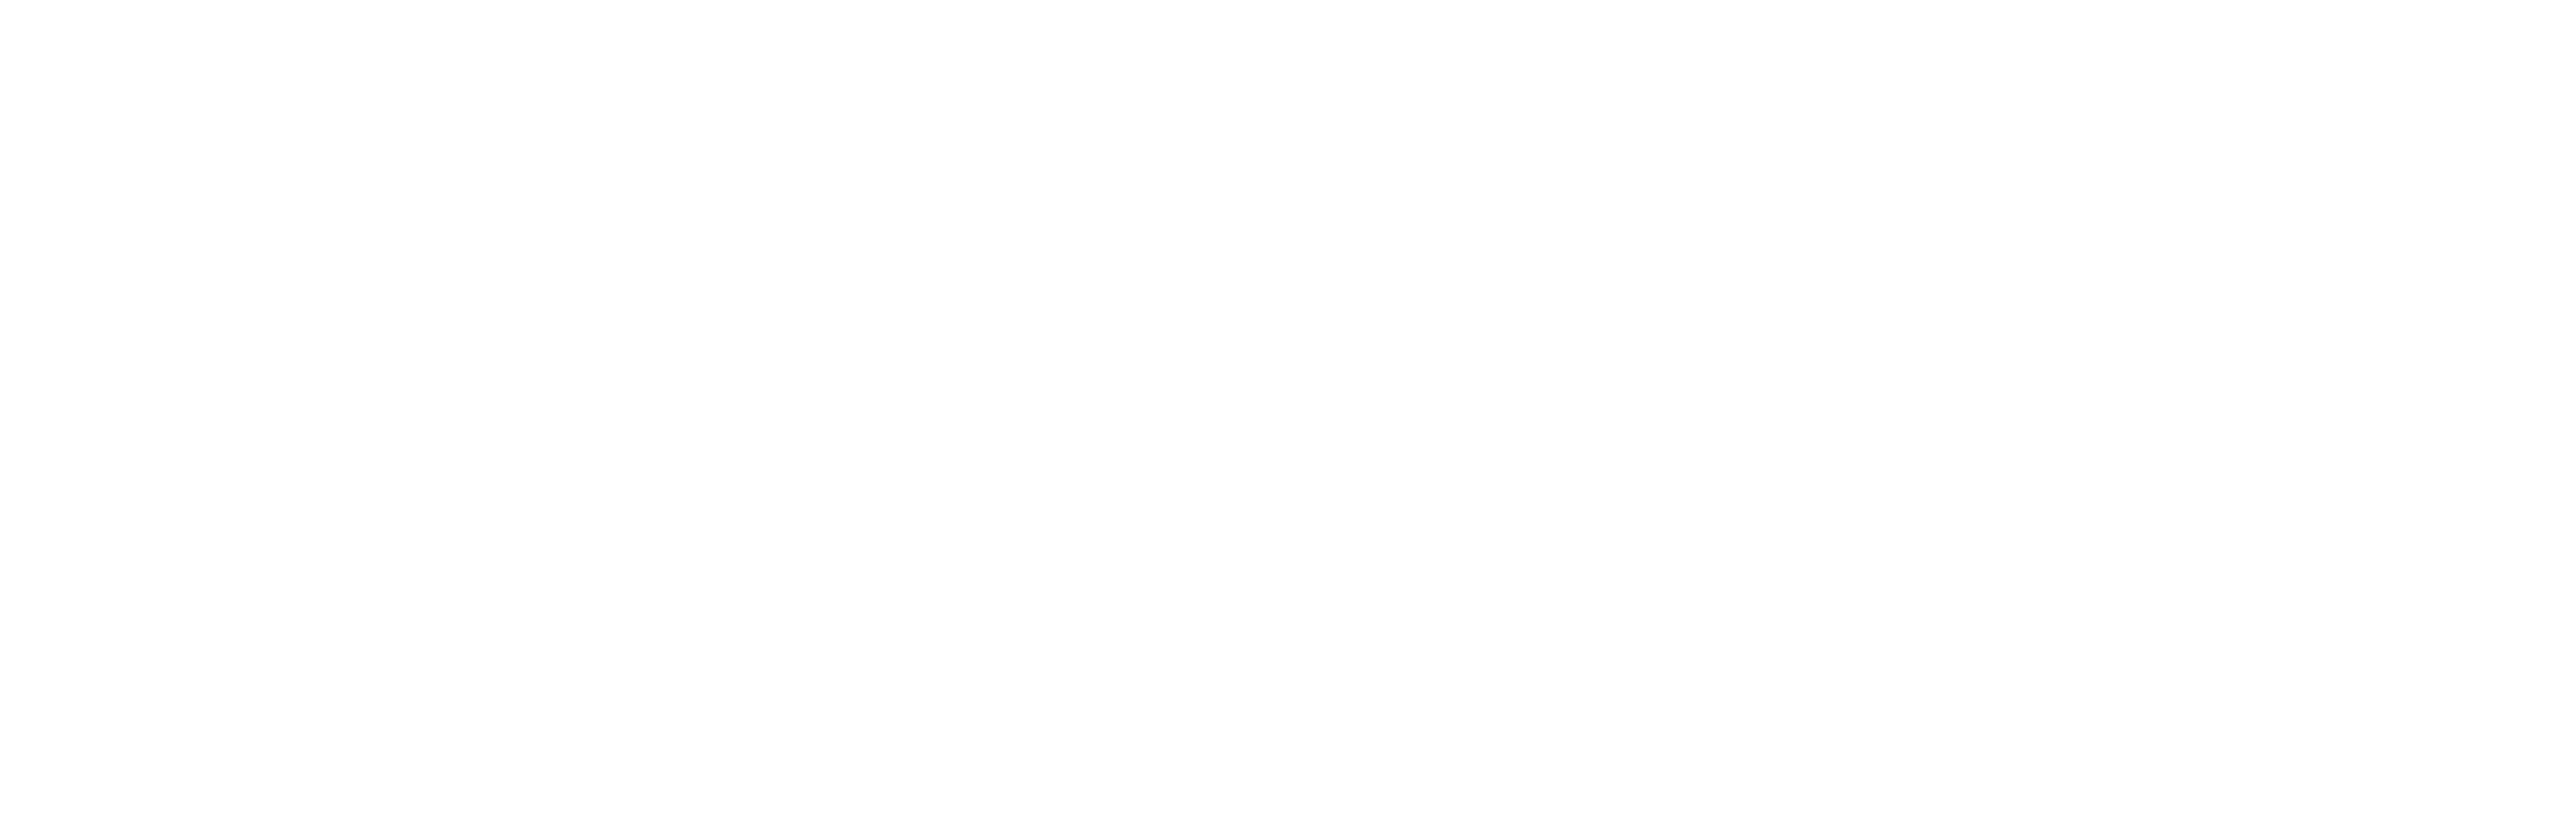 2020 PRINDIE Film Festival